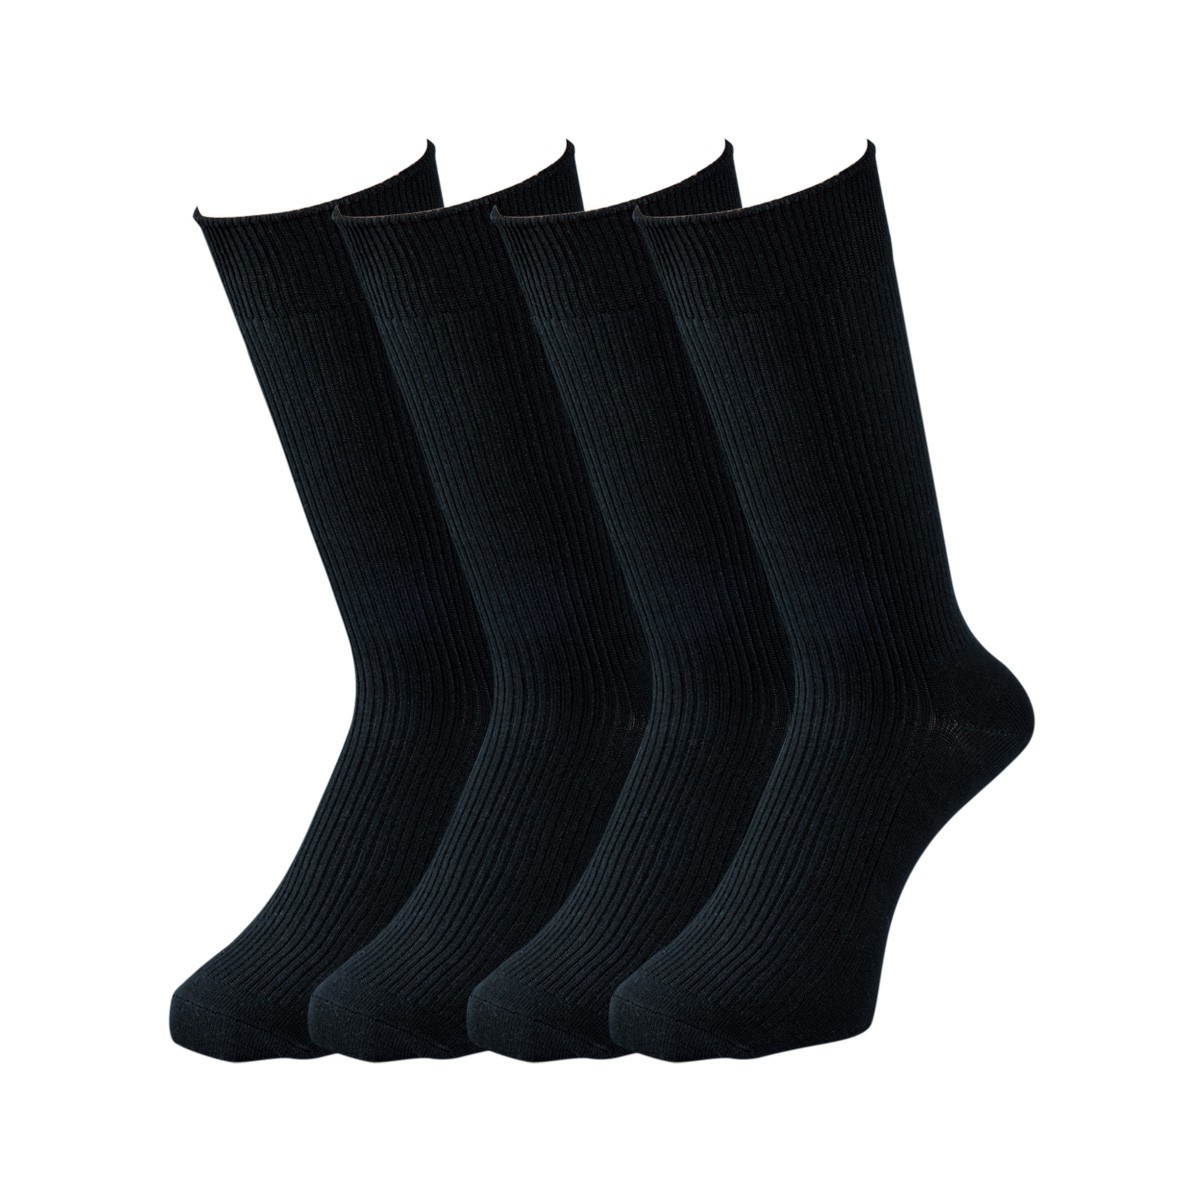 スクールソックス 黒 ブラック 靴下 クルー丈 19-22cm 22-25cm 25-28cm 